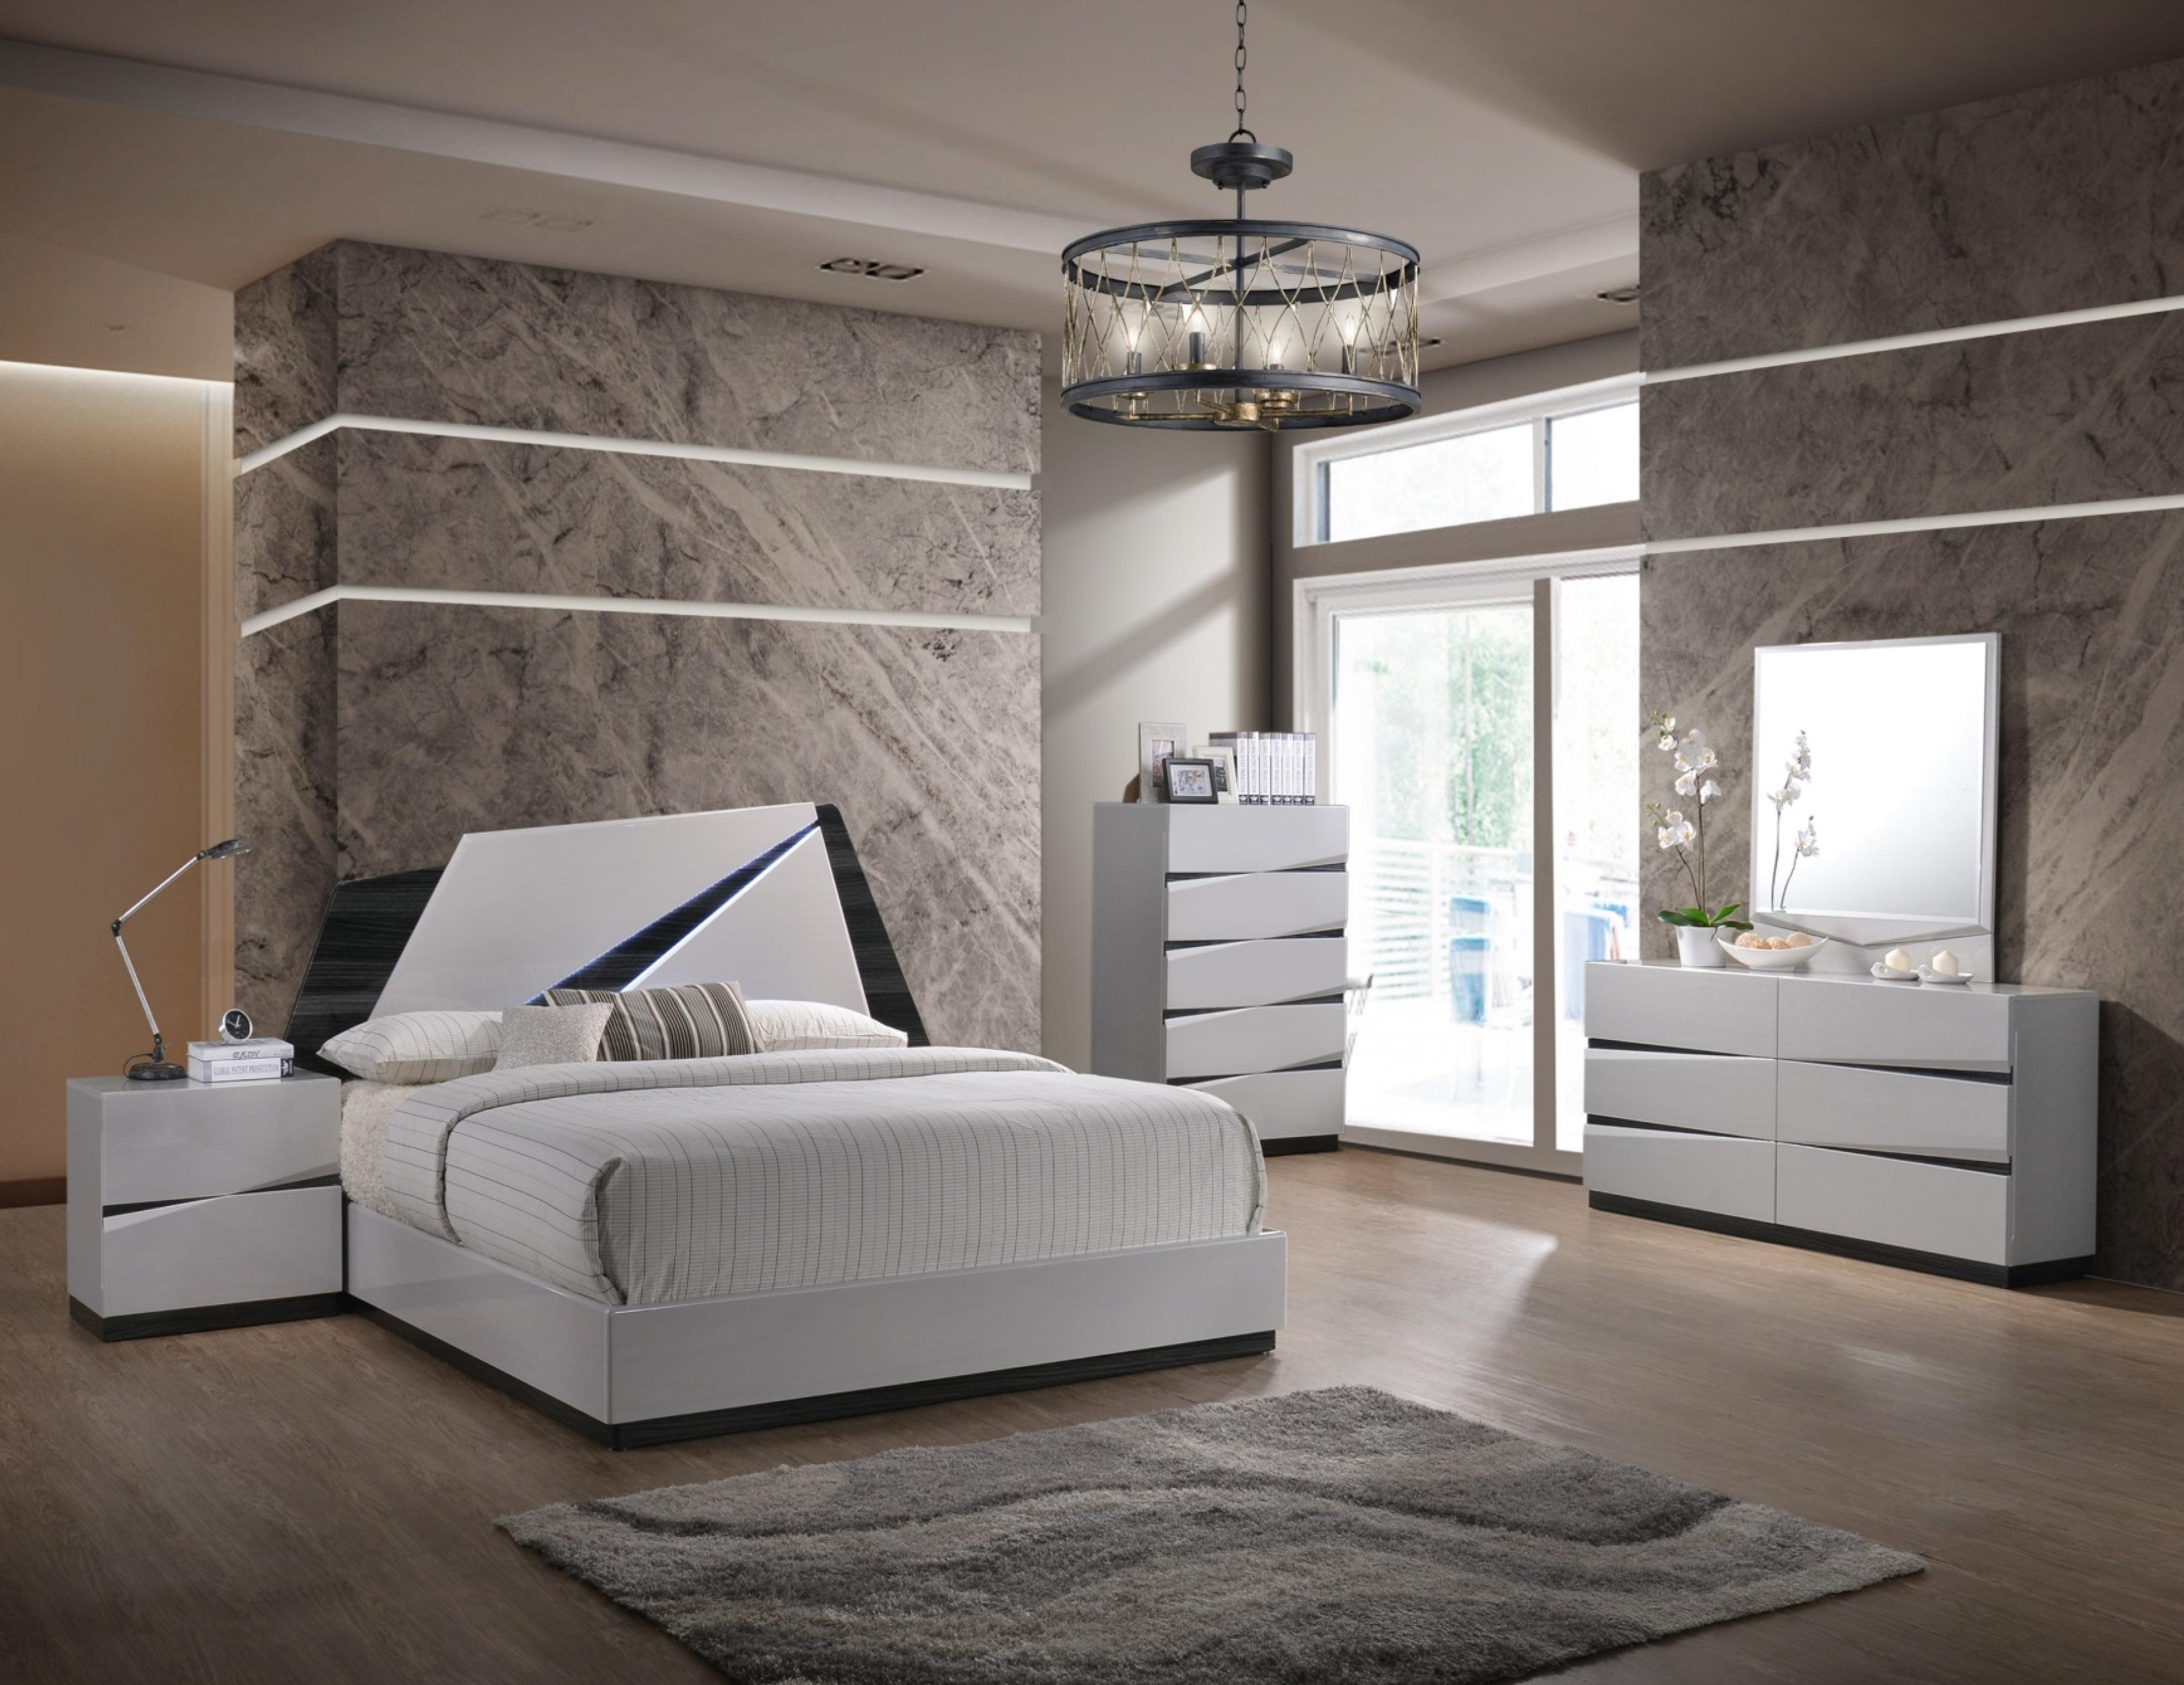 

    
Global Furniture Scarlett Modern White Gloss Finish King Bedroom Set 3 Pcs
